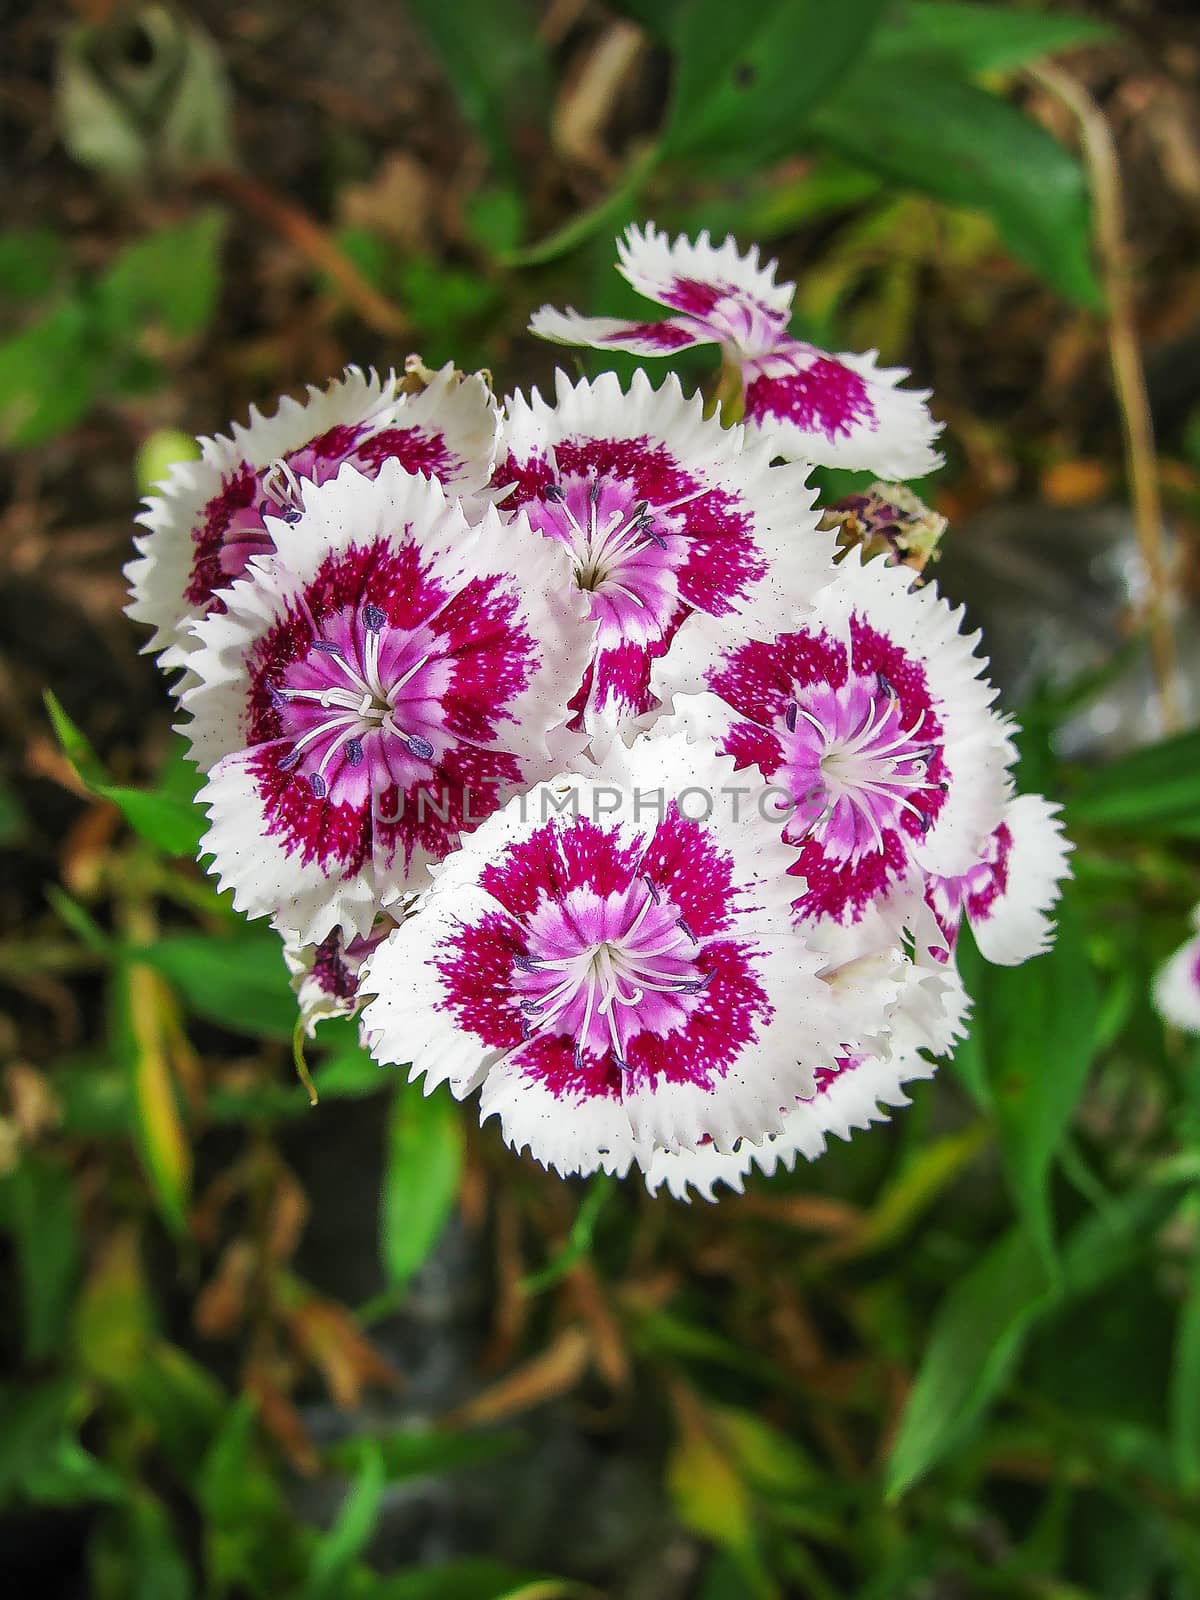 Blooming Phlox flowers by Grommik